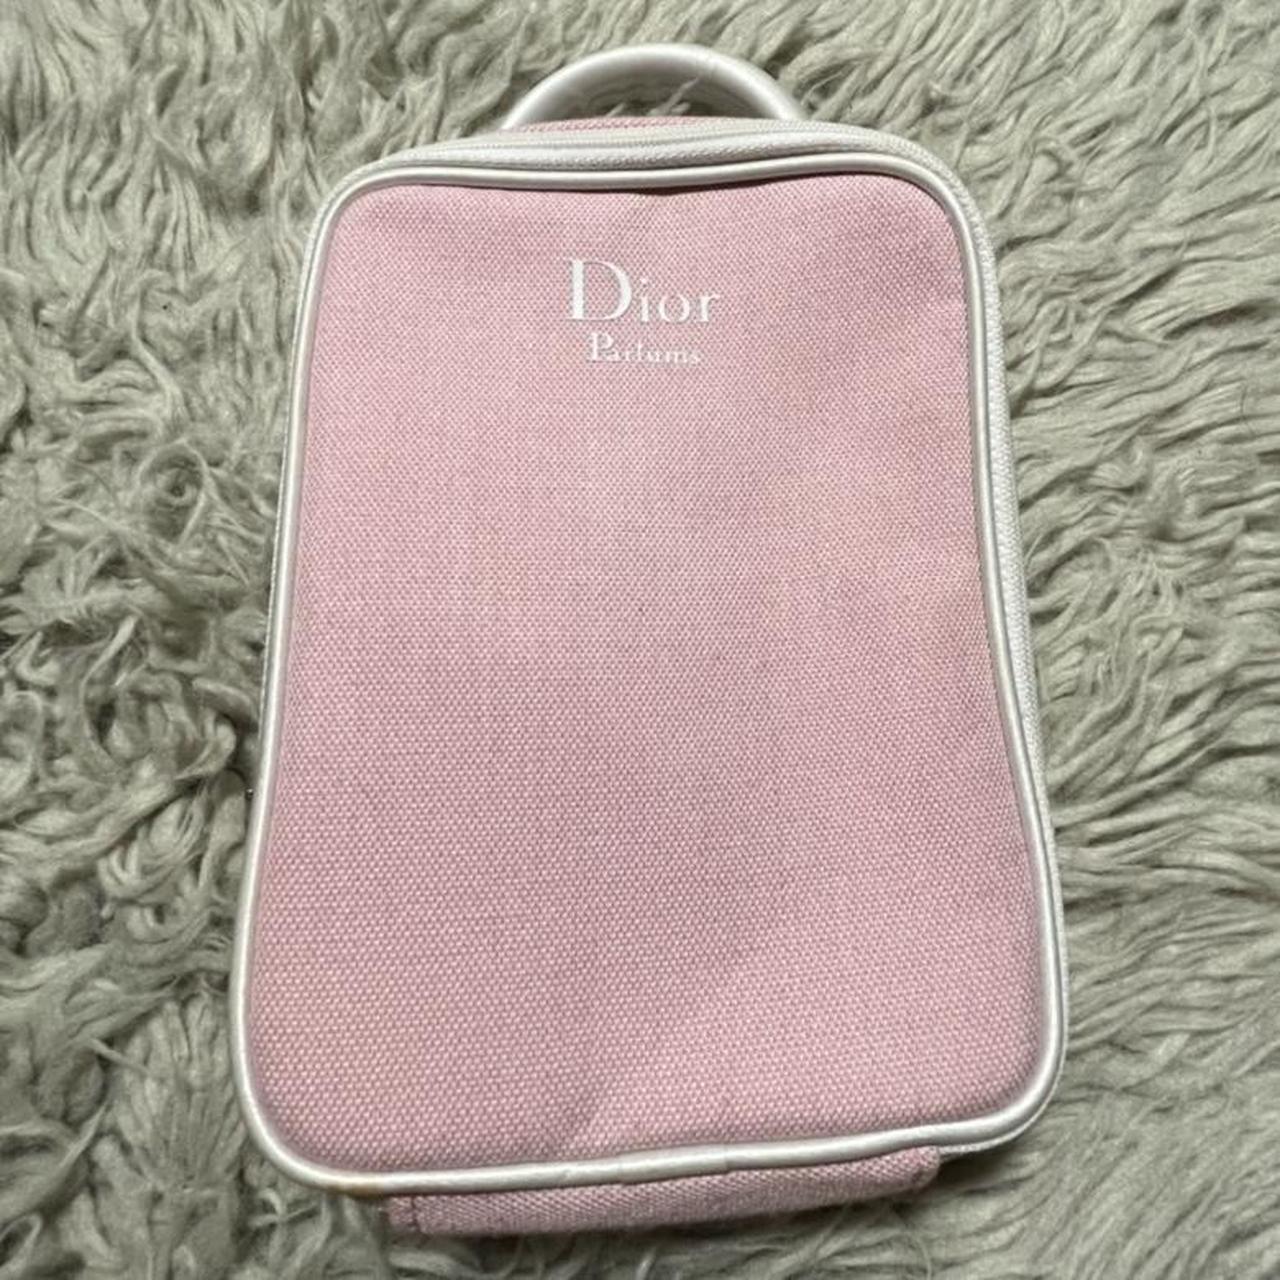 Use Dereon purse ( Beyoncé collection ) - Depop